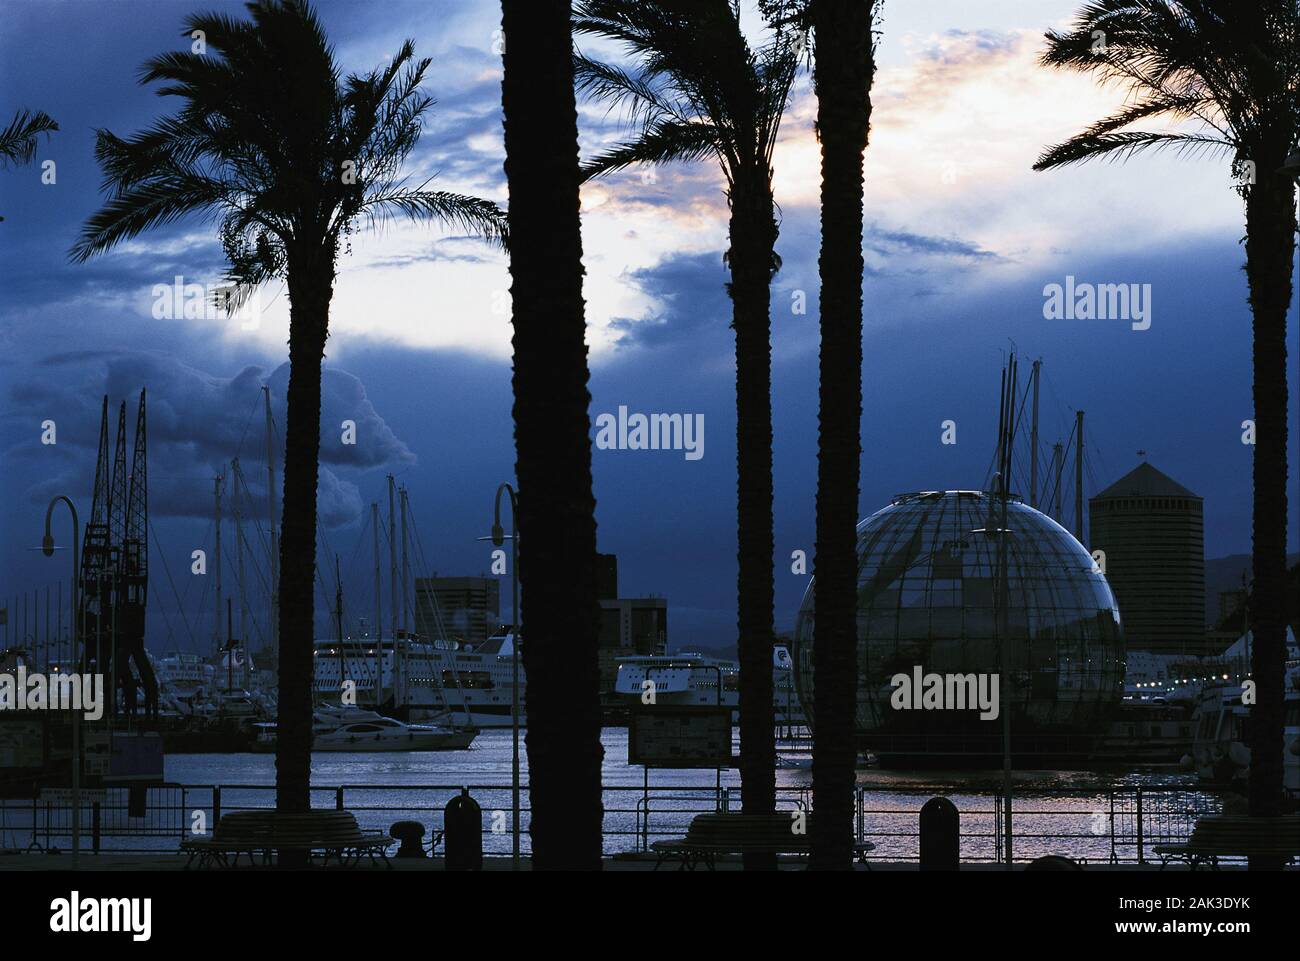 Blick auf den alten Hafen von Genua. Auf der rechten Seite der Abbildung ist die La Bolla entfernt. Das runde Gebäude wurde von Renzo Piano und Hosts gebaut Stockfoto